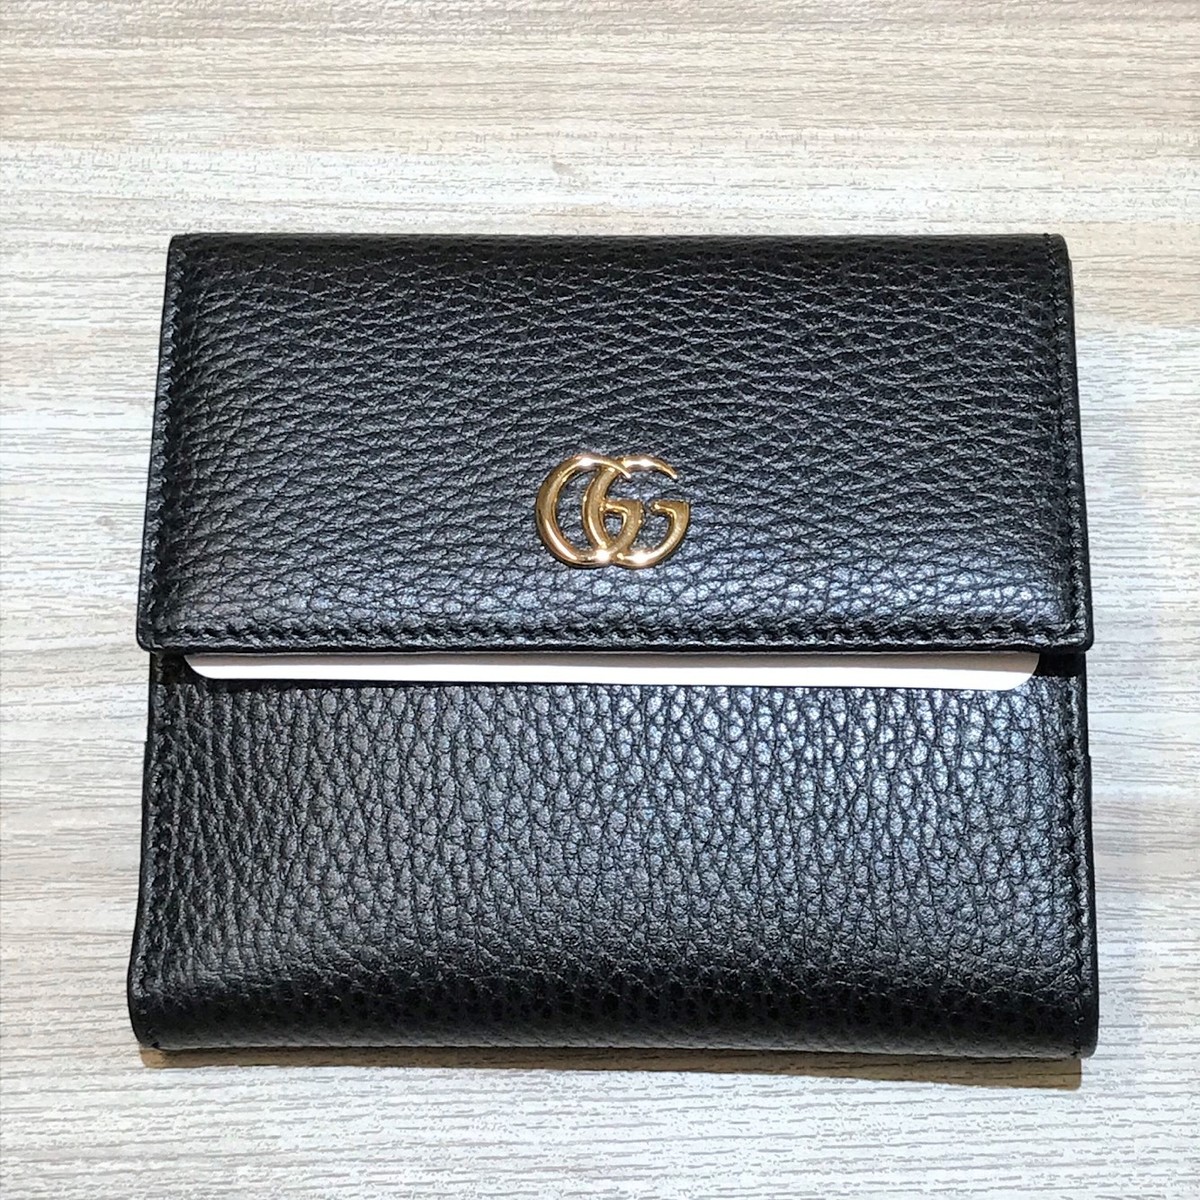 エコスタイル銀座本店にてグッチの456122 プチマーモント 2つ折り財布を買取致しました。 買取価格・実績 2019年12月19日公開情報